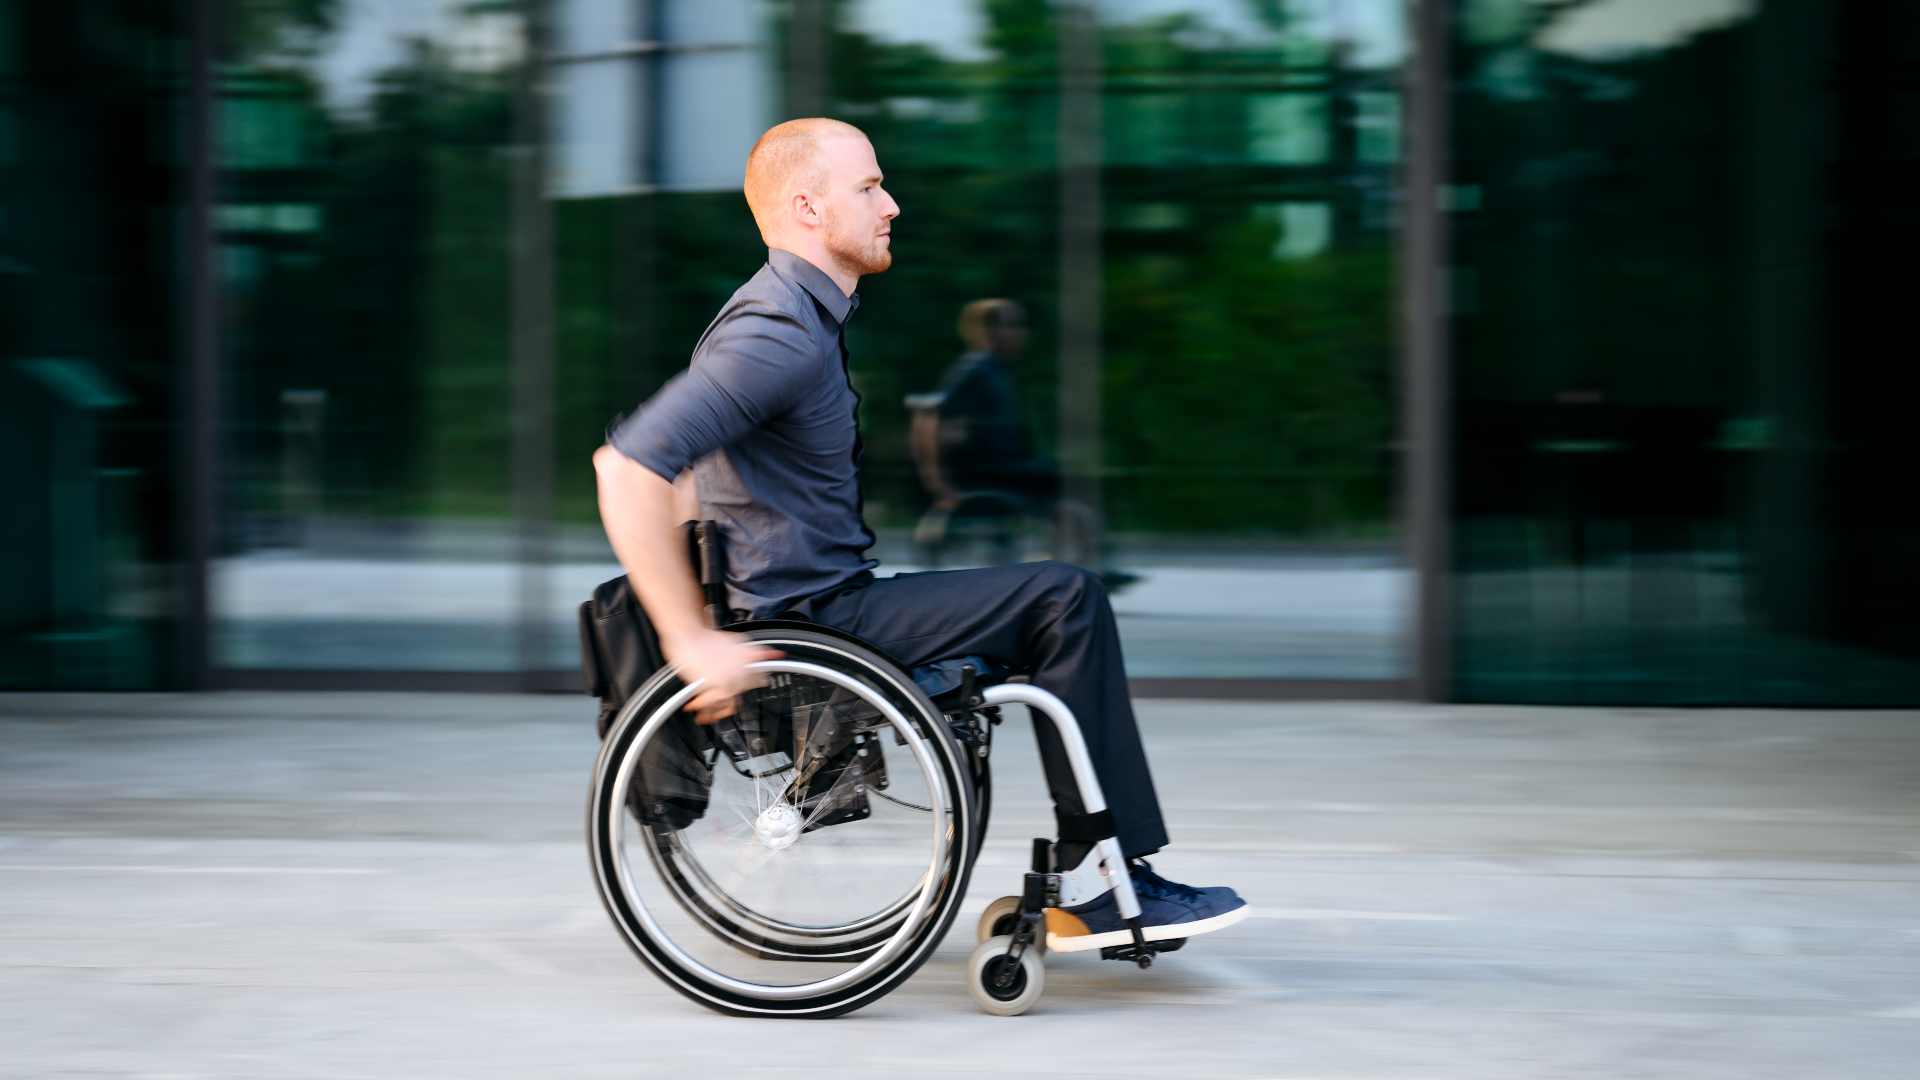 A man wearing a navy blue shirt on a wheelchair